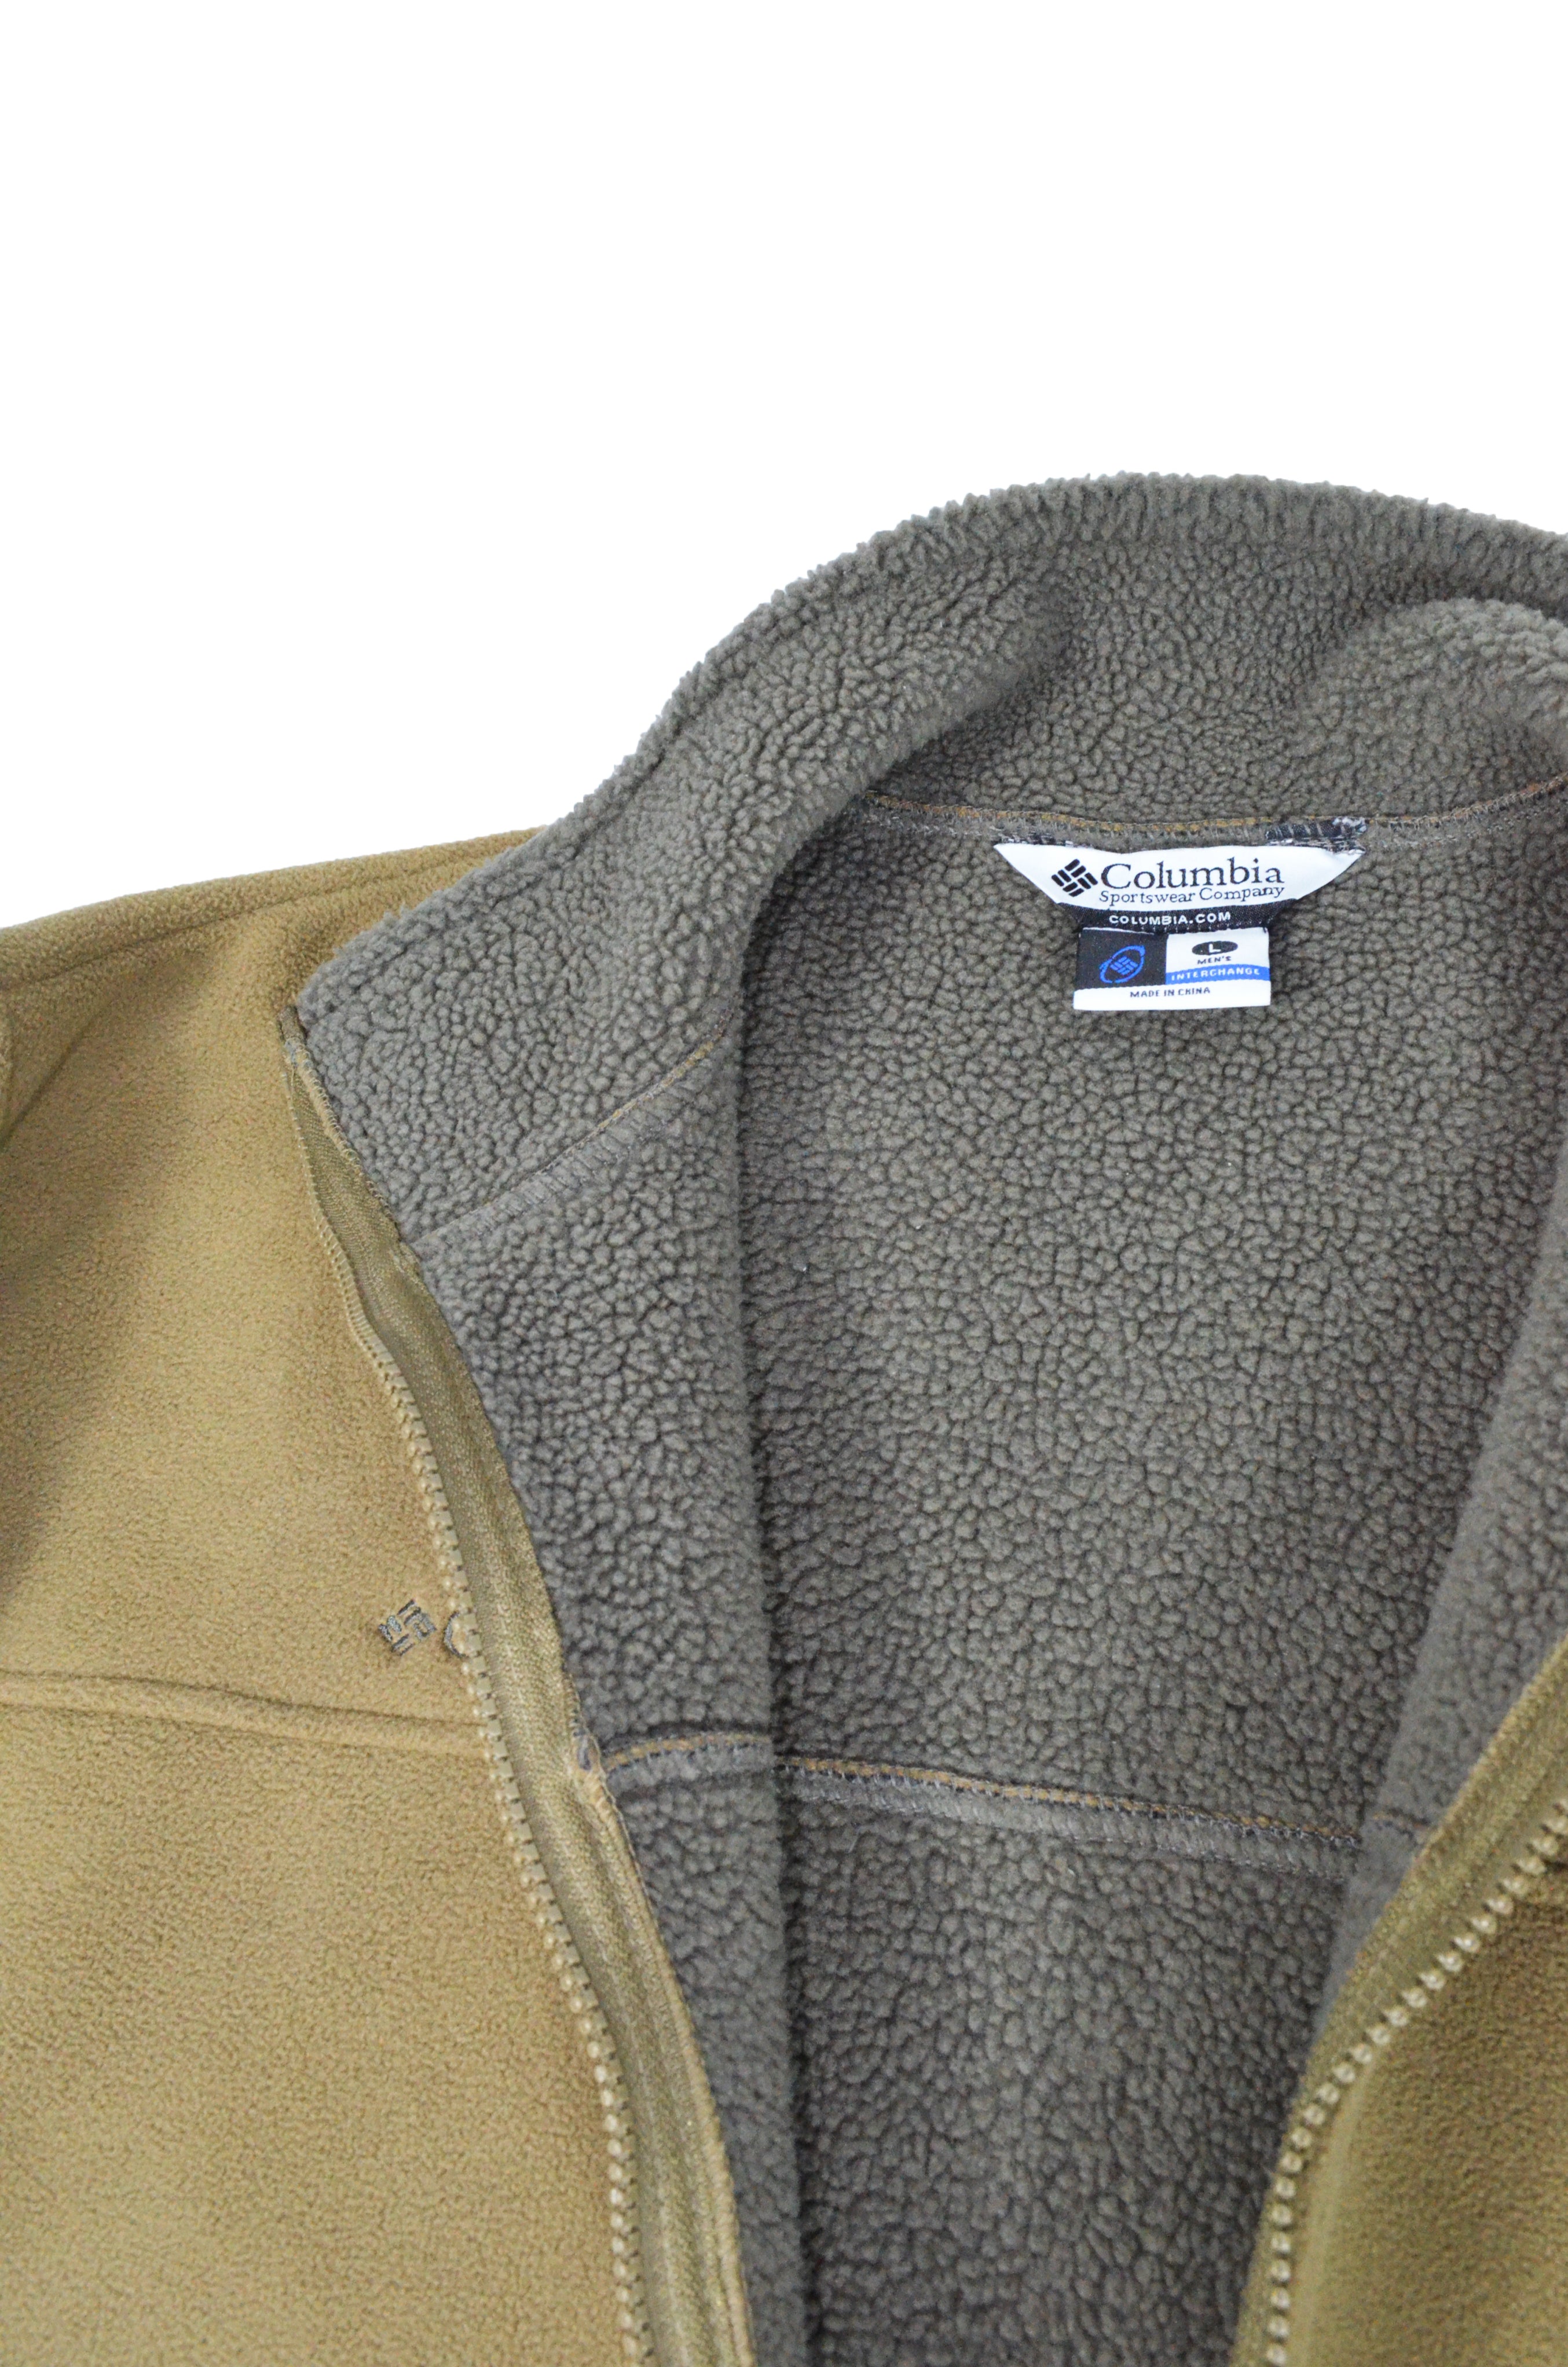 Vintage Columbia Fleece Lined Khaki Jacket